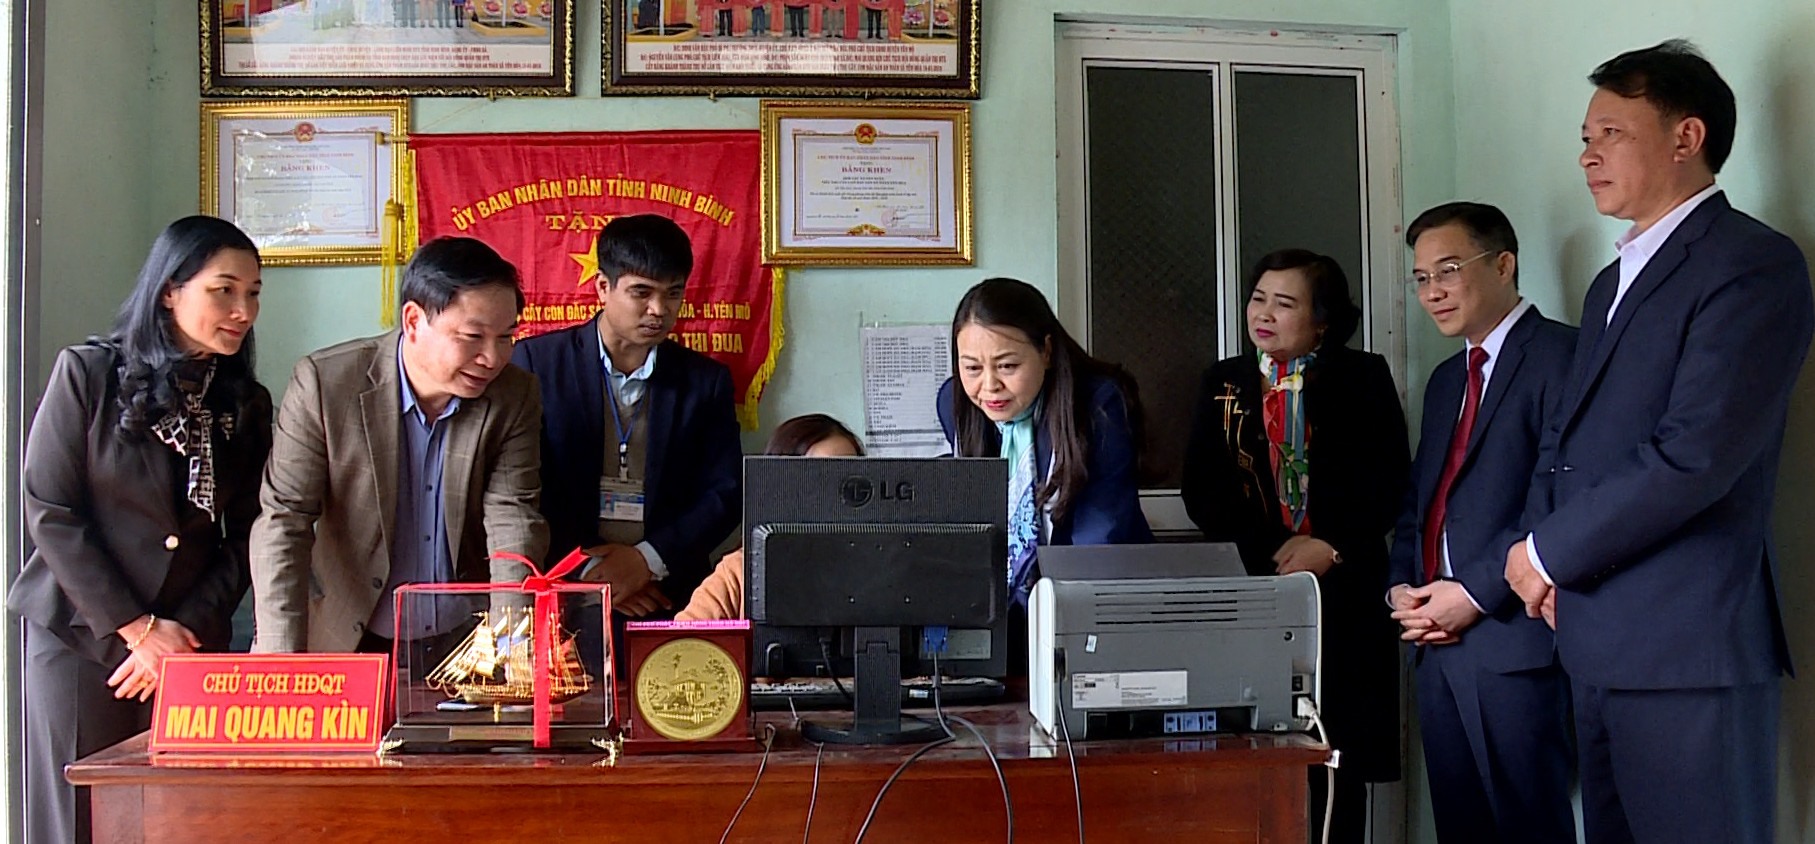 Lãnh đạo tỉnh Ninh Bình kiểm tra công tác chuyển đổi số trên địa bàn xã Yên Hòa. Ảnh: Nguyễn Trường